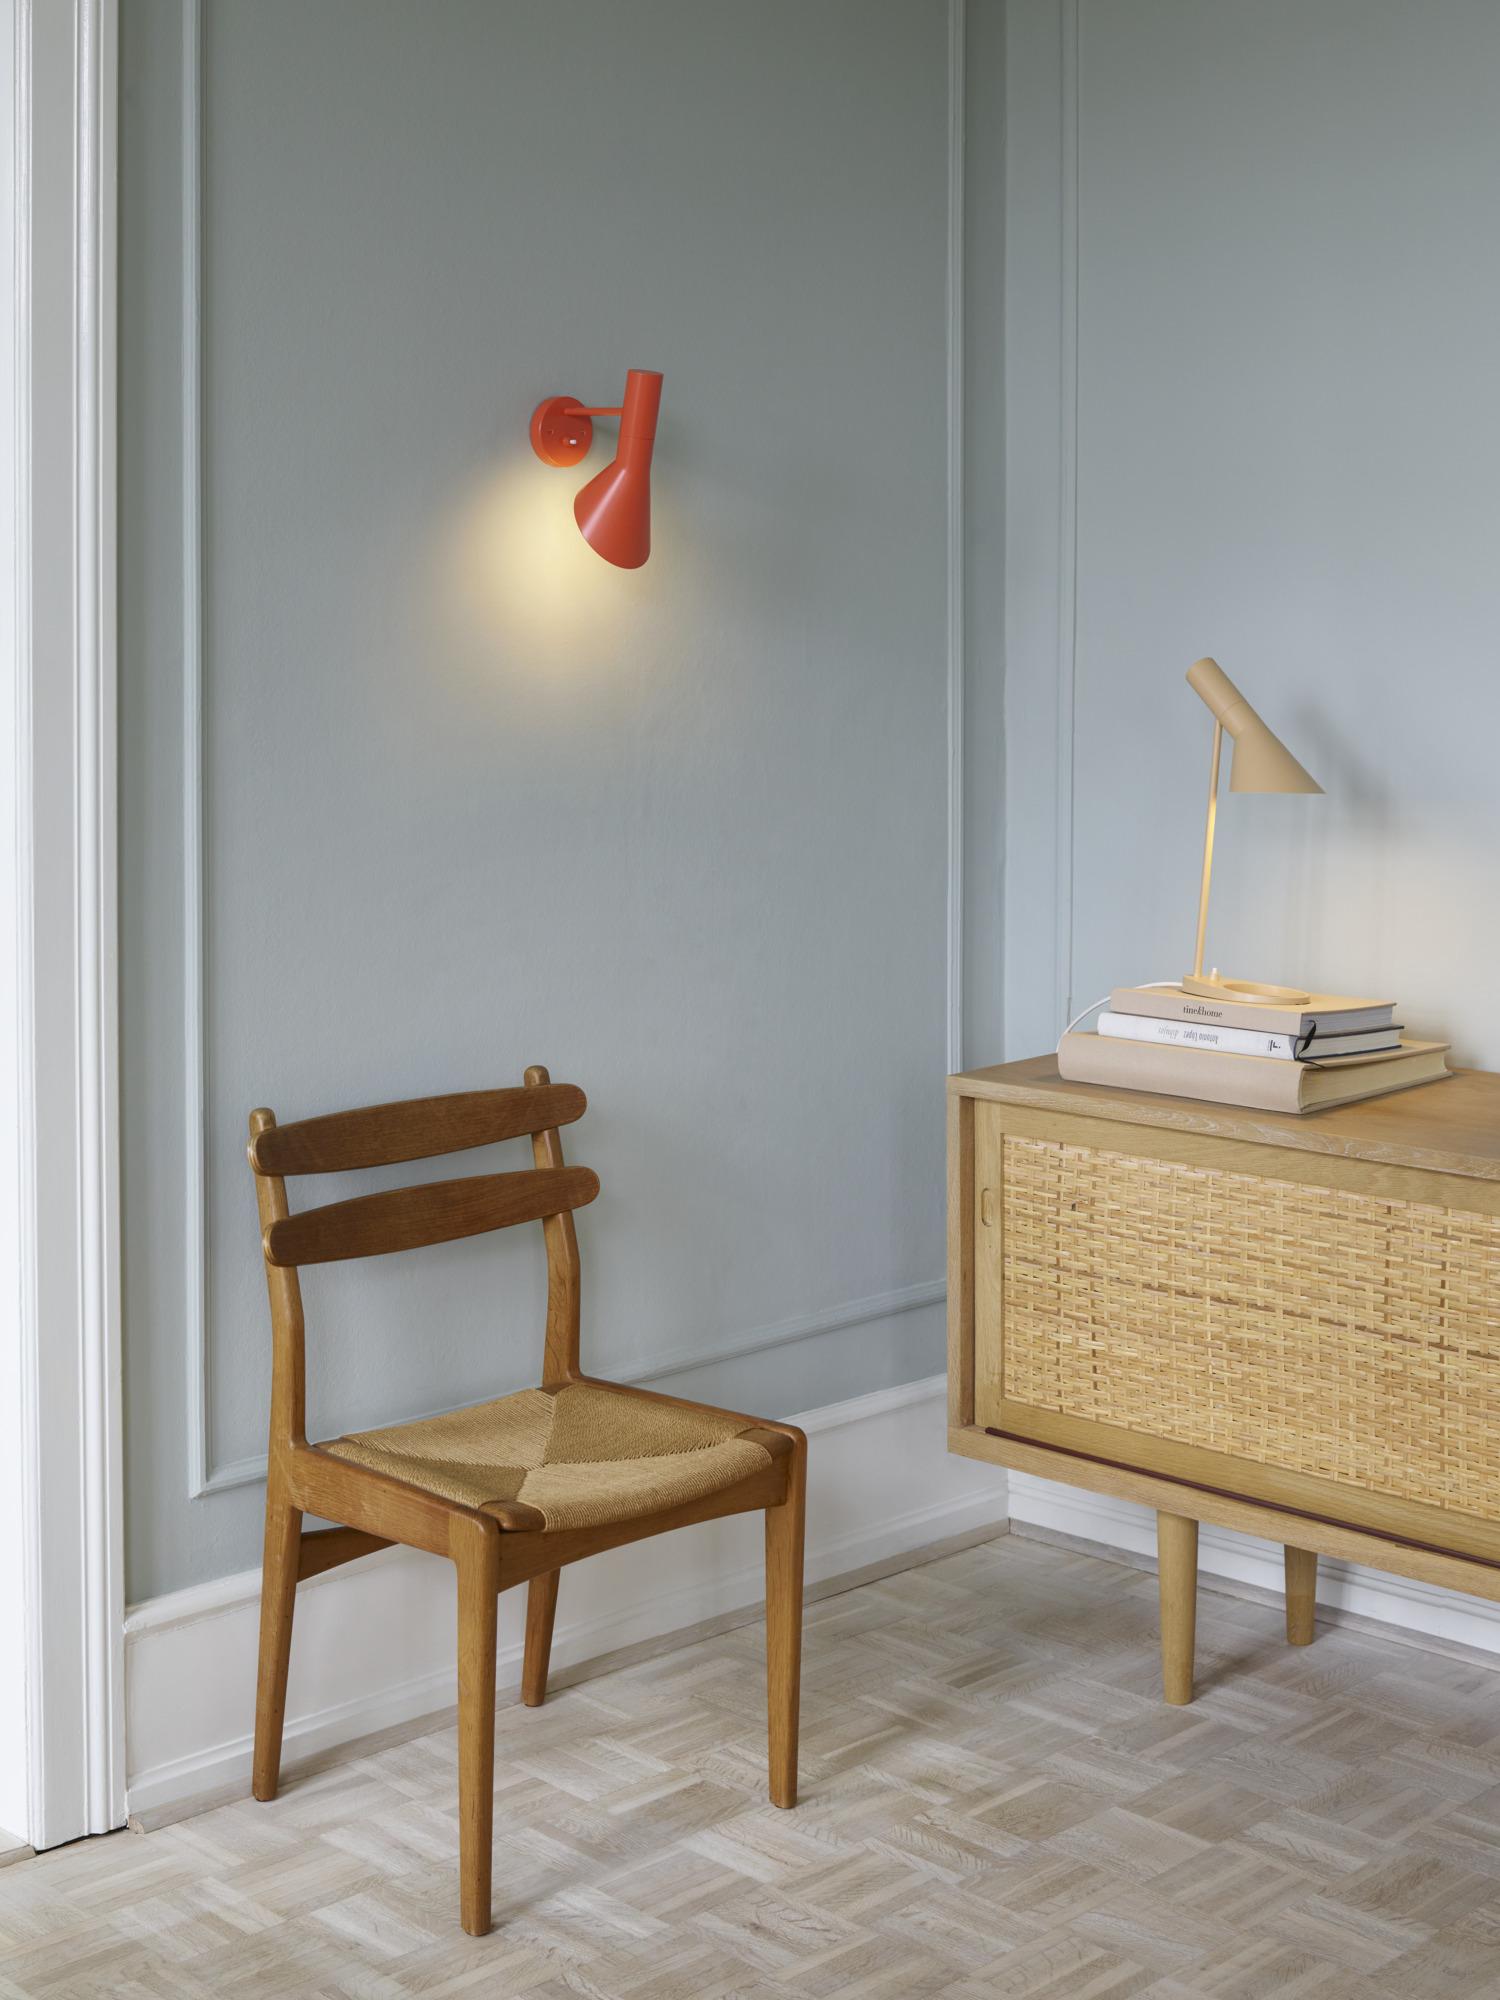 Arne Jacobsen 'AJ Mini' Table Lamp in Dusty Blue for Louis Poulsen For Sale 3